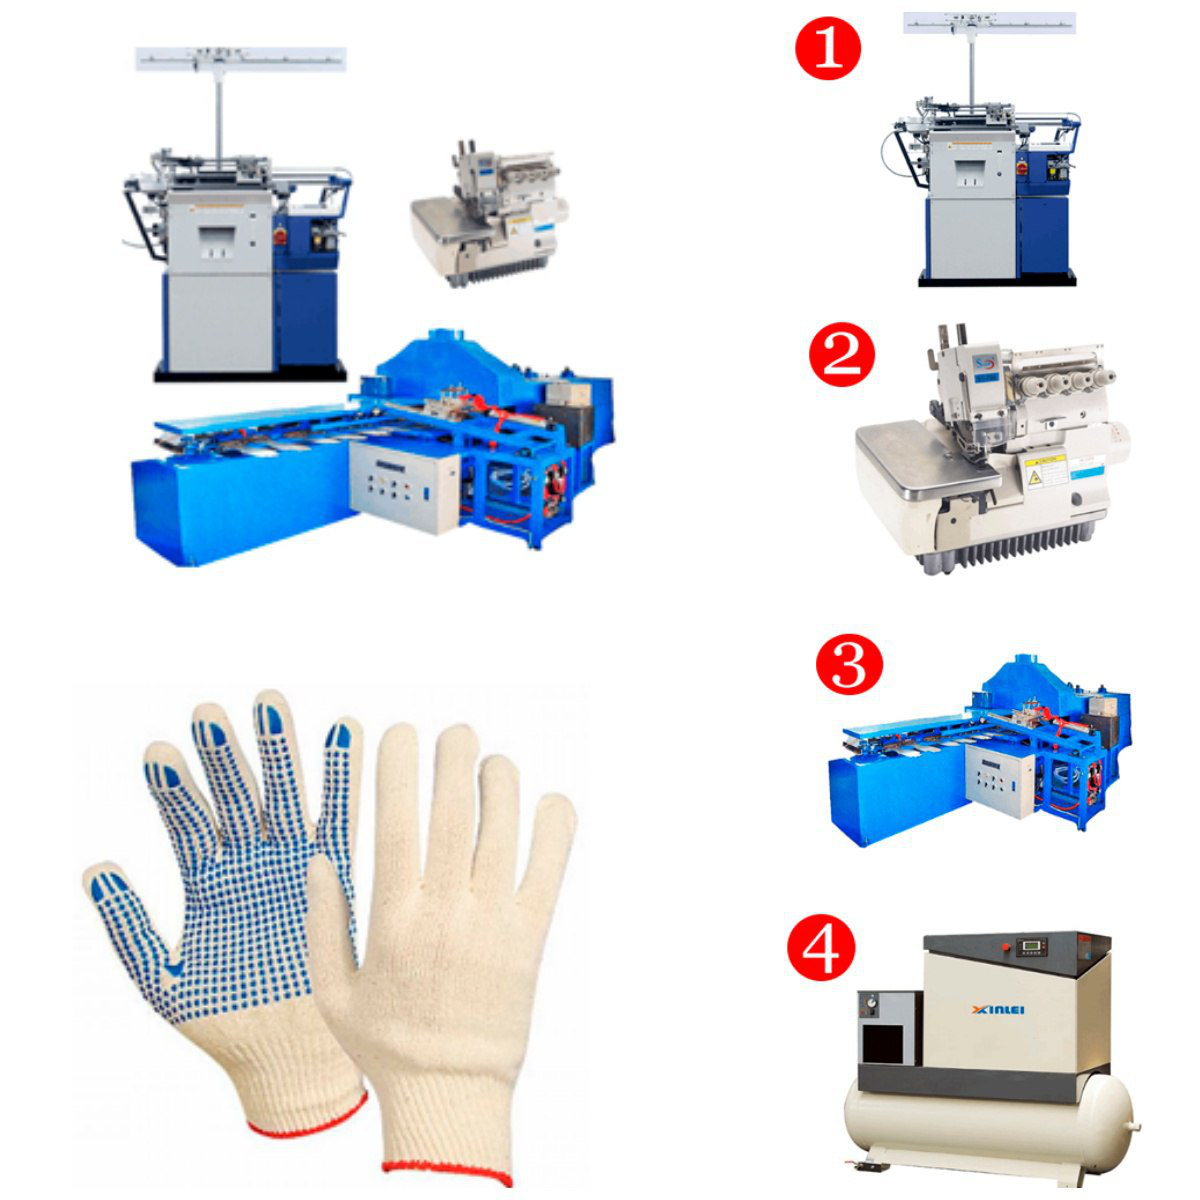 Производство и продажа перчаток пвх: бизнес-идея, как открыть, вложения, оборудование, что нужно для открытия + реальные кейсы